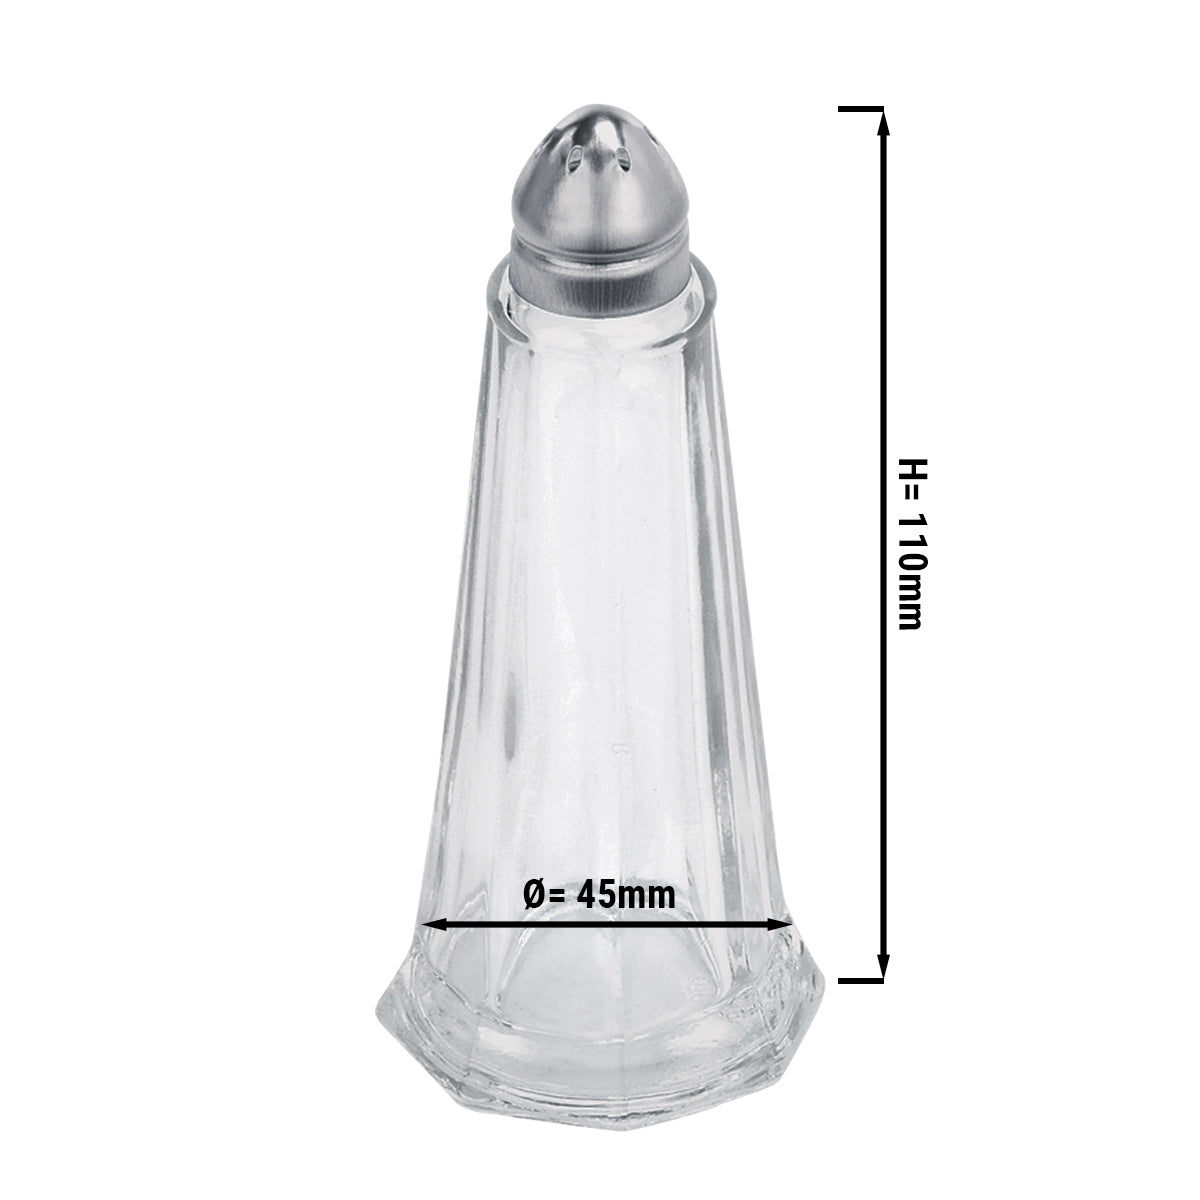 Pepper-/ Saltbøsse i glass - høyde: 11 cm